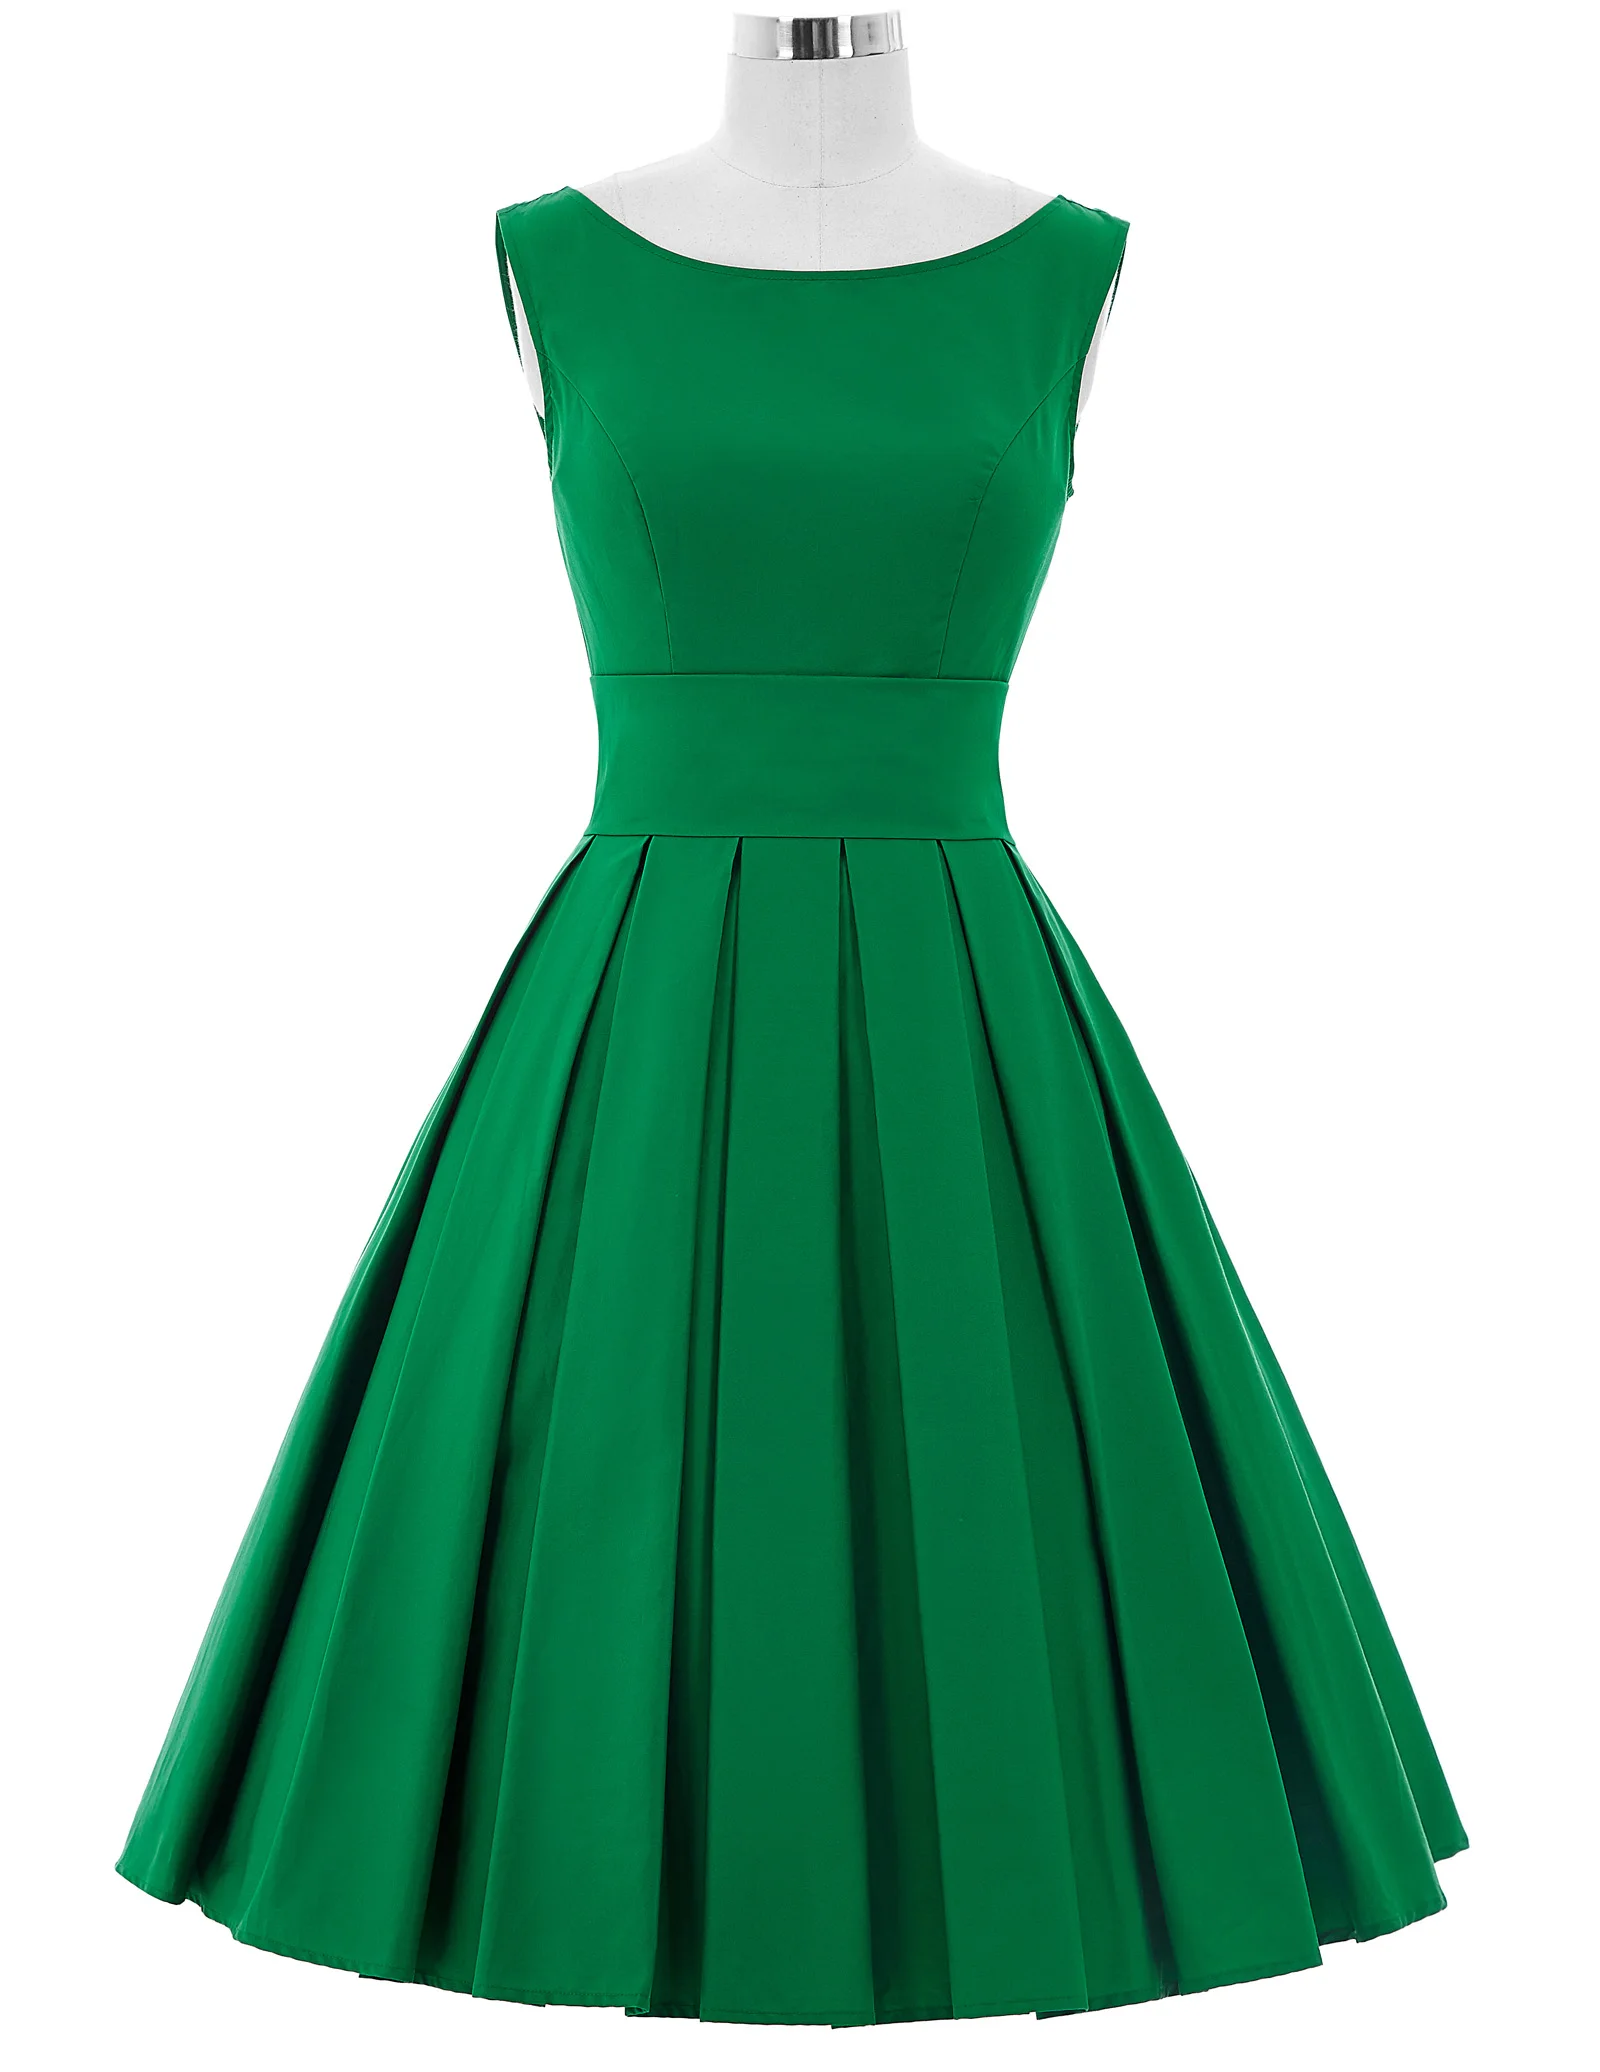 Belle Poque винтажные платья 50s 60s женское летнее платье элегантная зеленая Туника без рукавов рокабилли Ретро женские вечерние платья